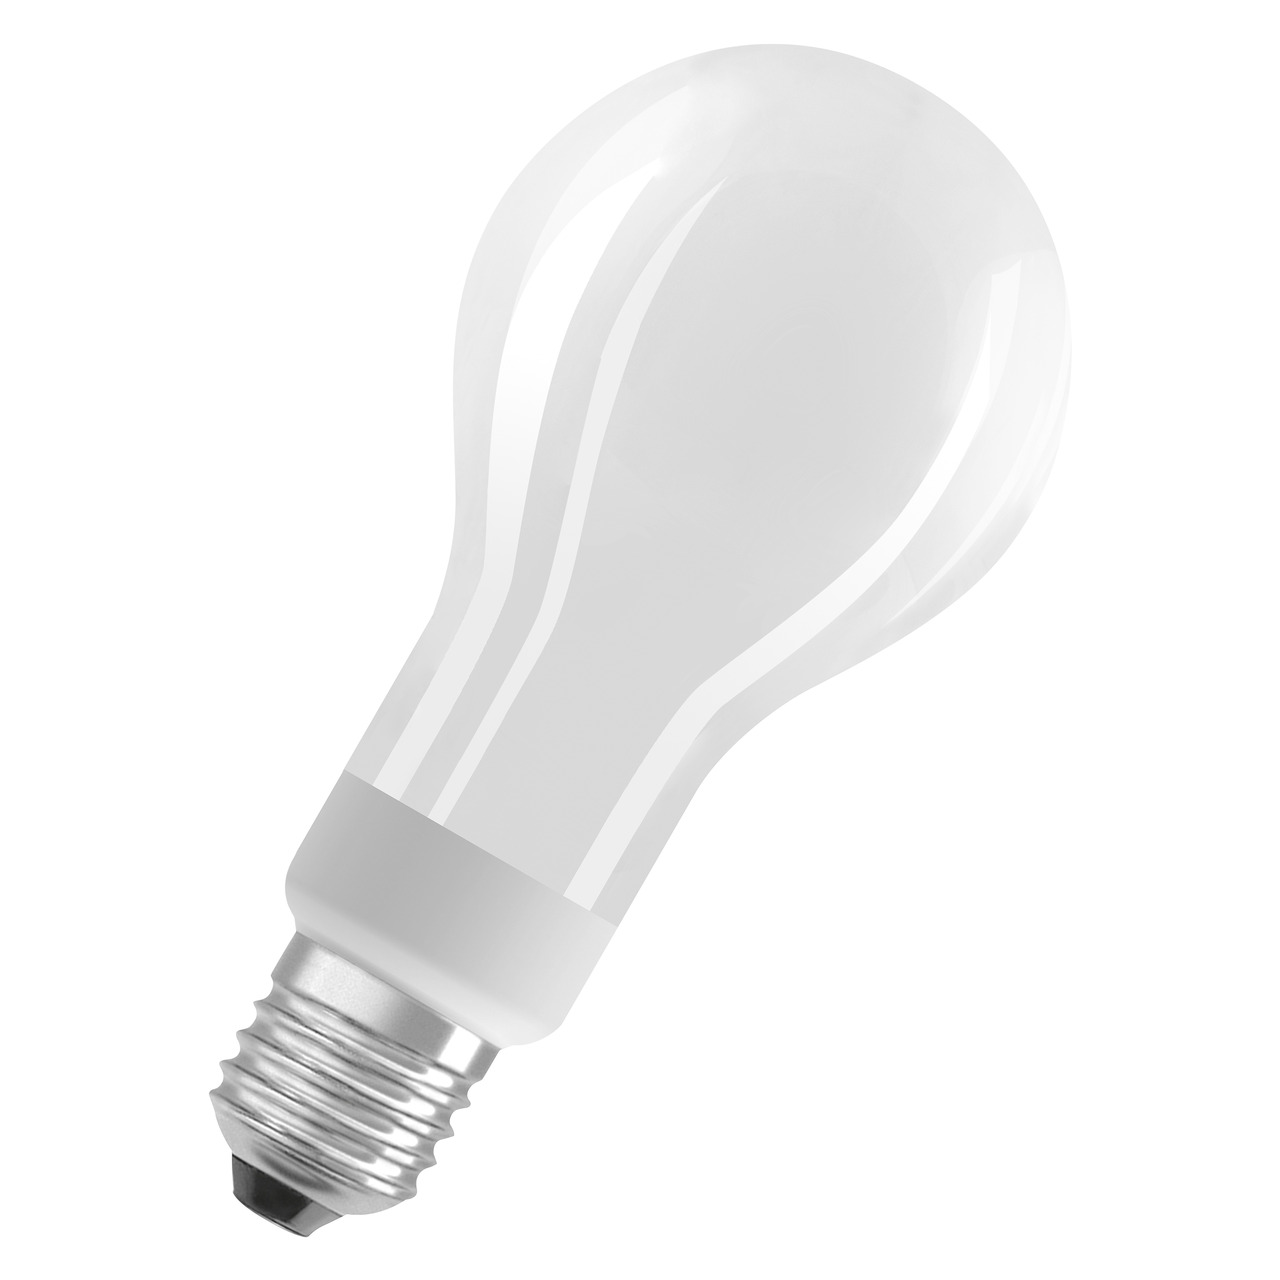 OSRAM 18-W-LED-Lampe A70- E27- 2452 lm- warmweiss- matt- dimmbar unter Beleuchtung